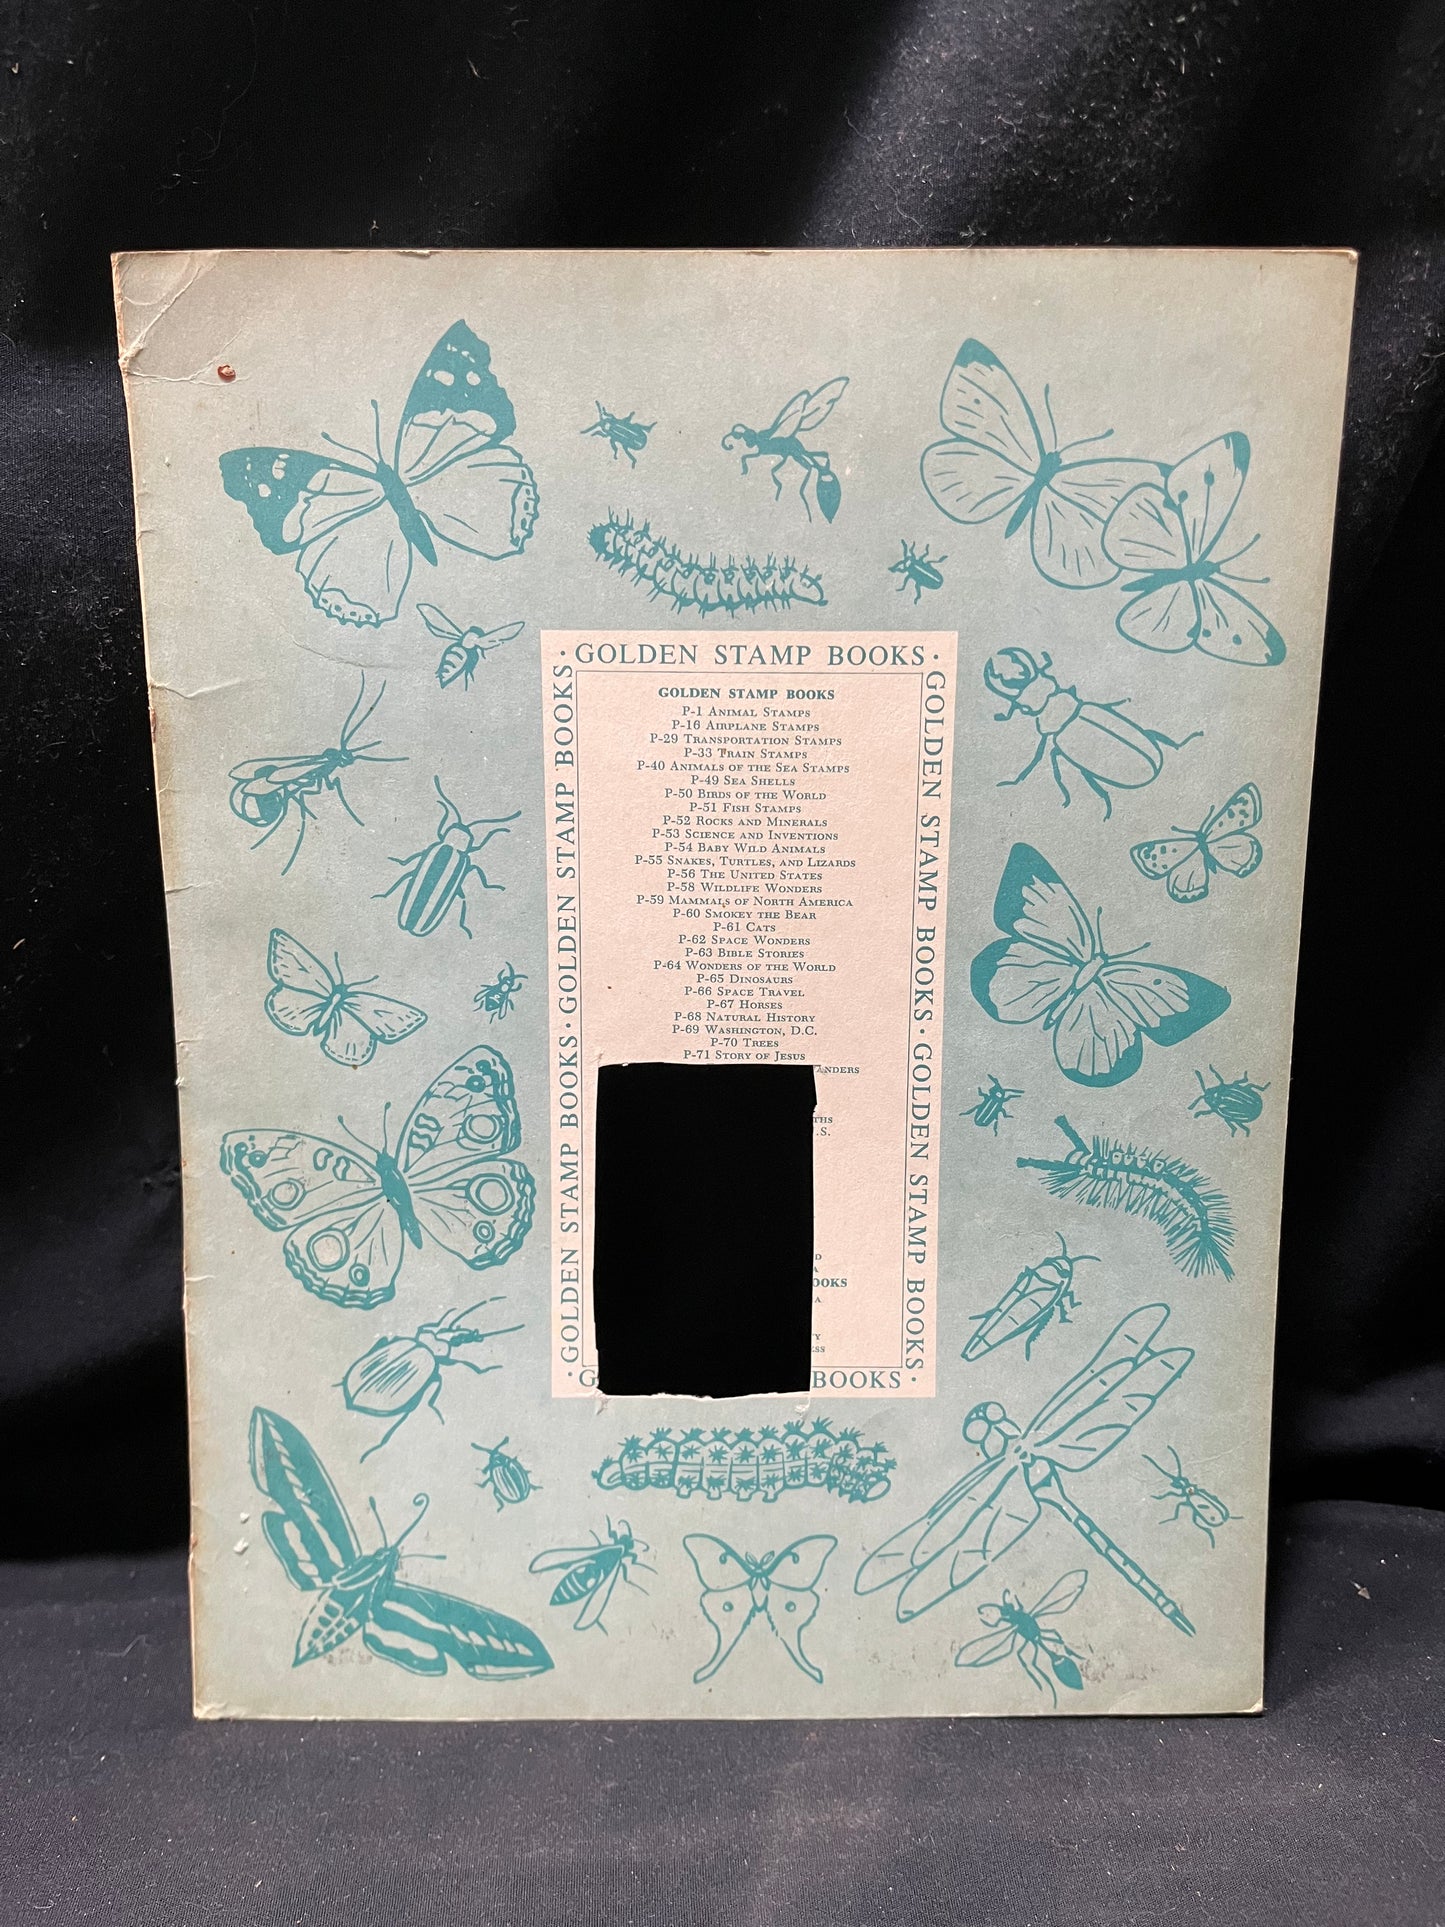 A Golden Stamp Book "Butterflies and Moths"